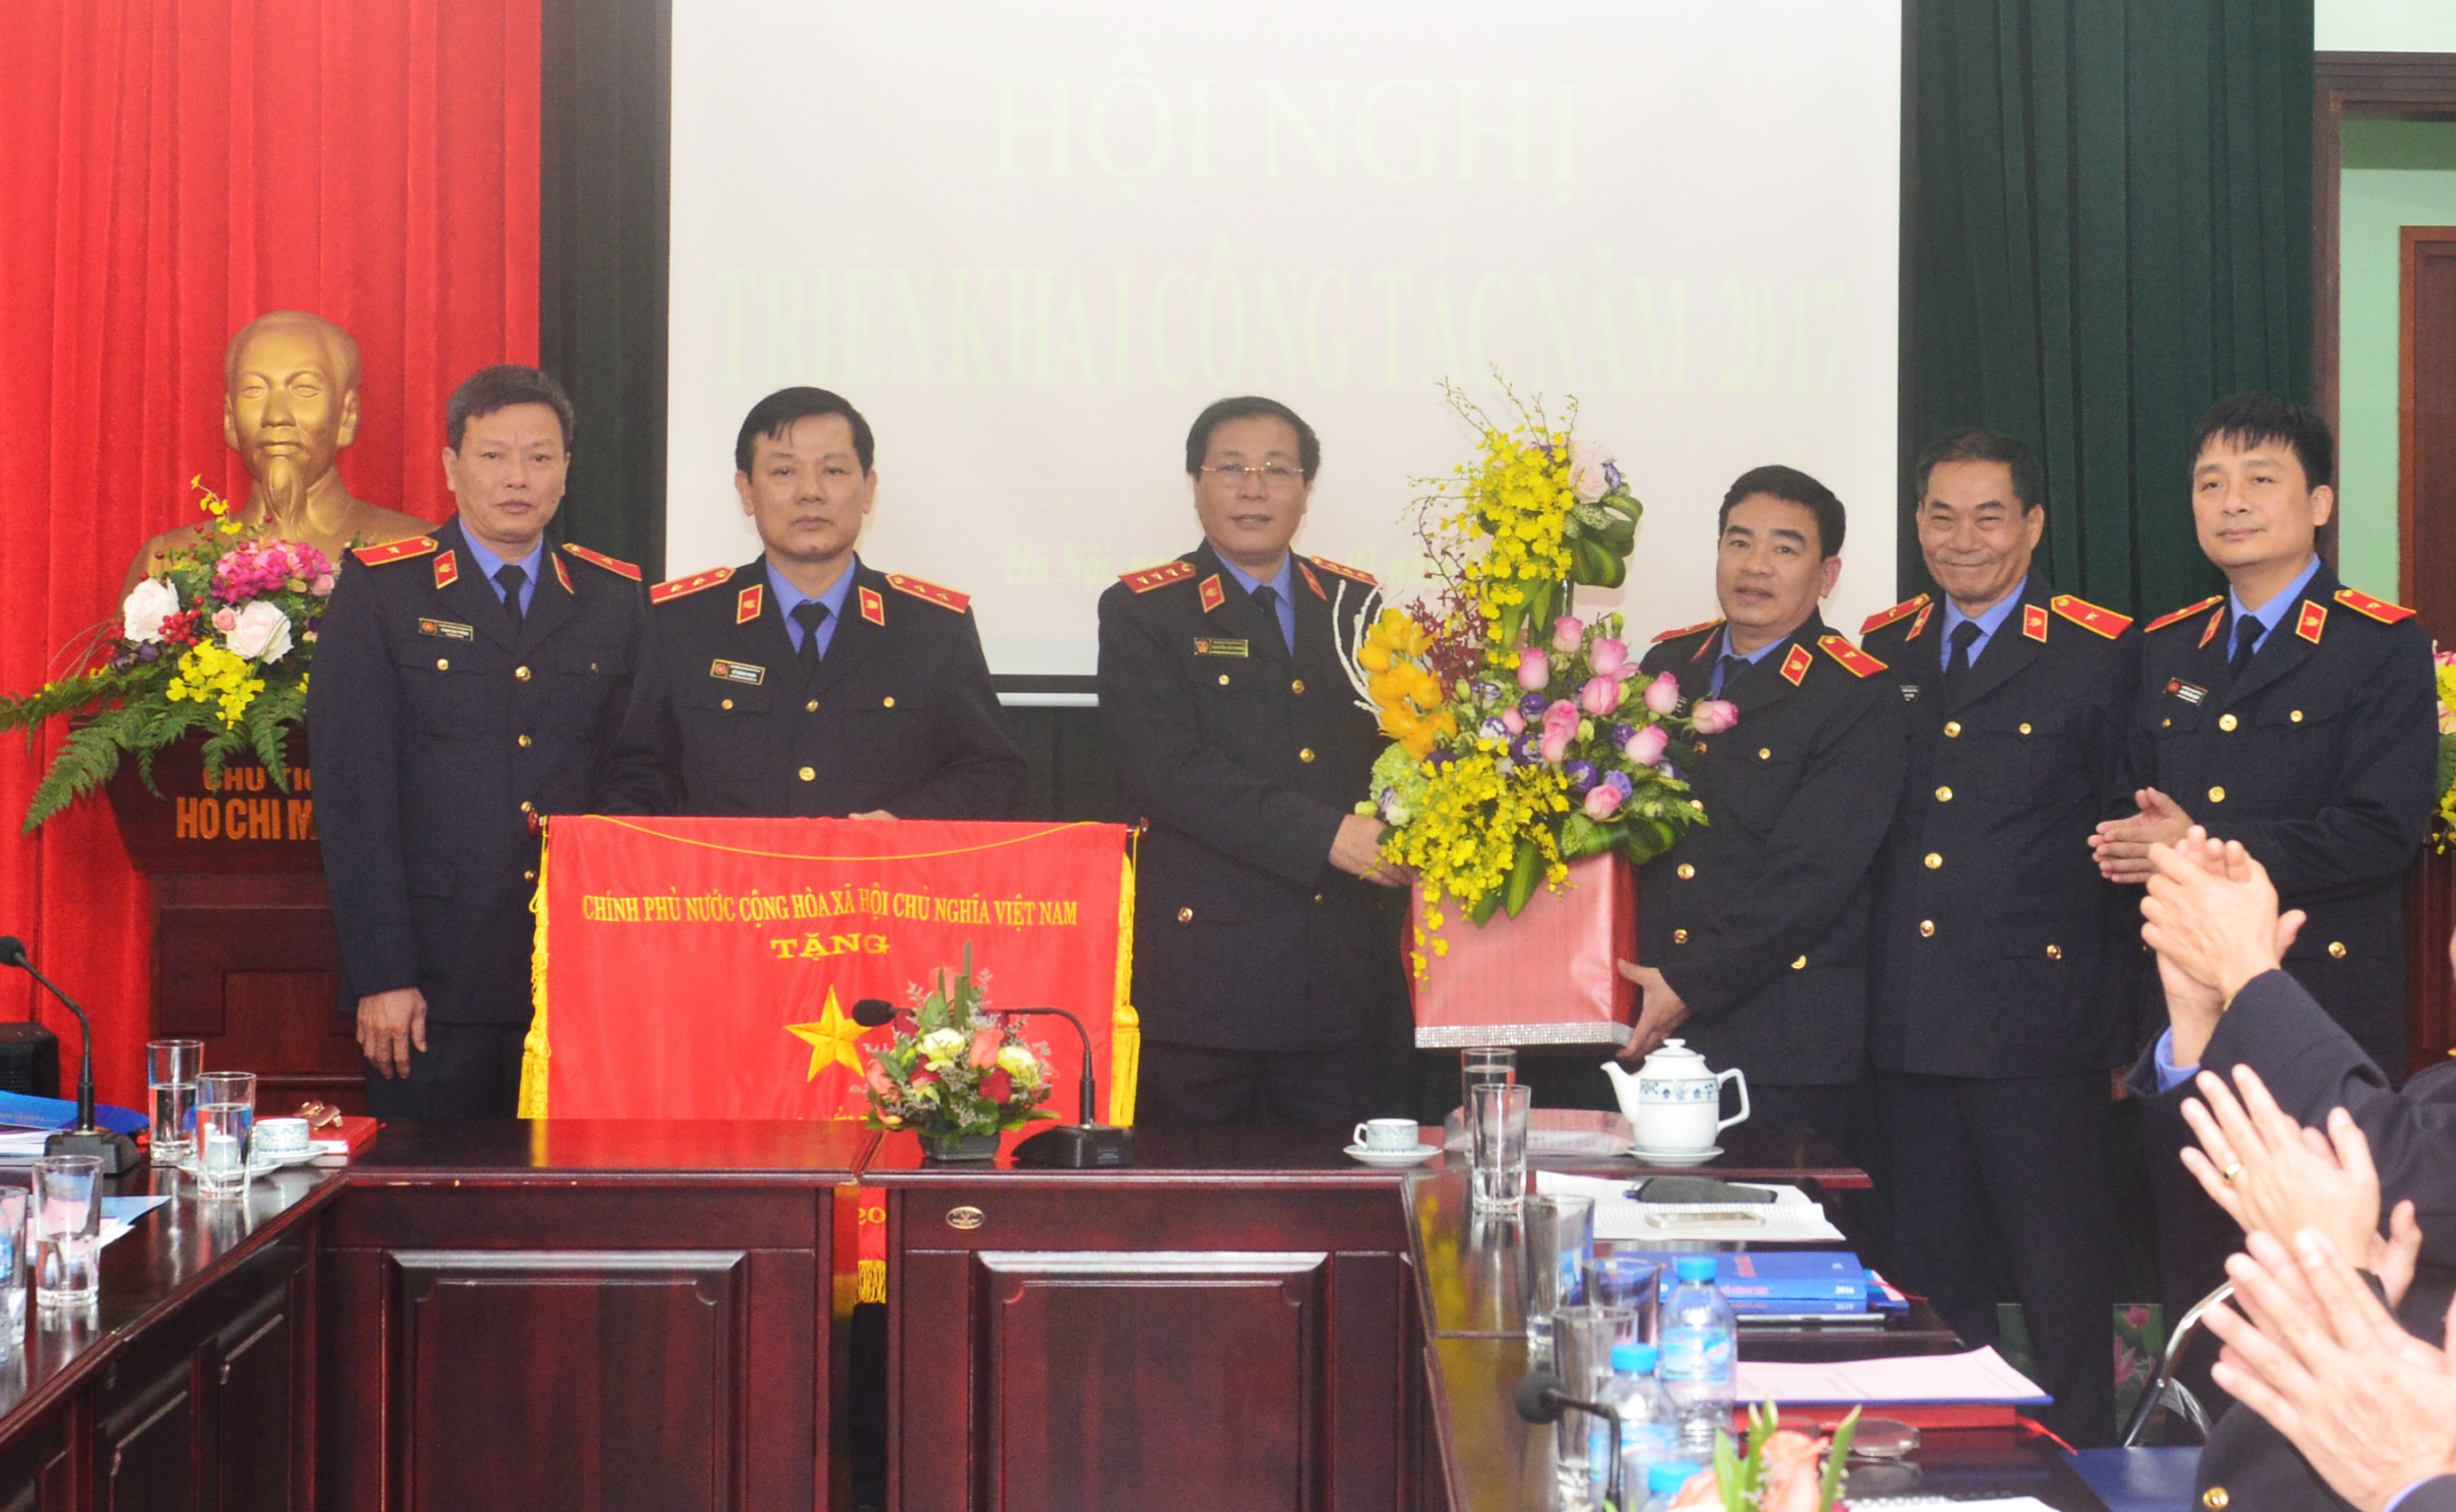 Phó Viện trưởng Thường trực VKSNDTC Nguyễn Hải Phong trao “Cờ thi đua của Chính phủ” cho tập thể Lãnh đạo Cơ quan điều tra của VKSNDTC